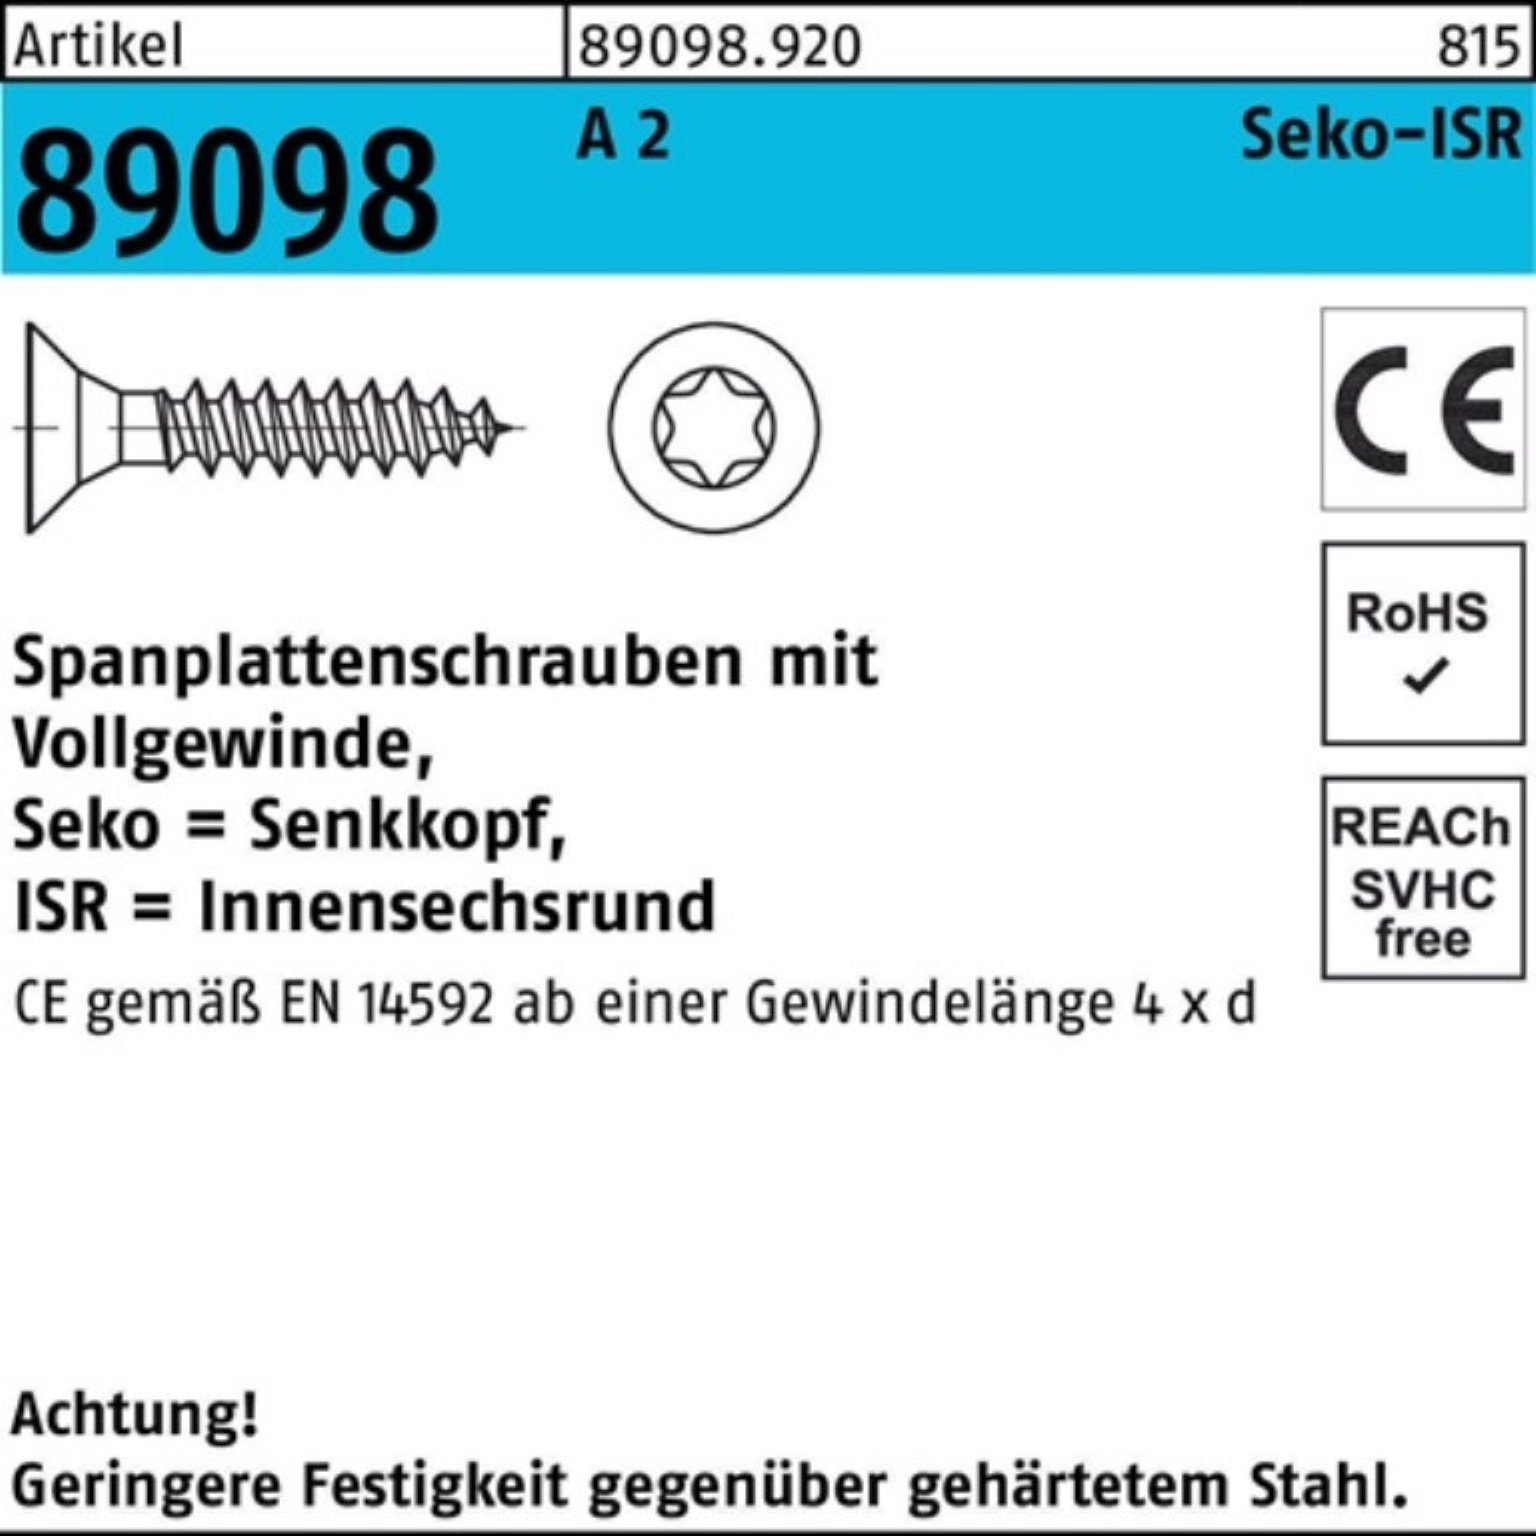 Reyher Spanplattenschraube 1000er Pack Spanplattenschraube R 89098 SEKO ISR VG 5x 20-T25 A 2 1000